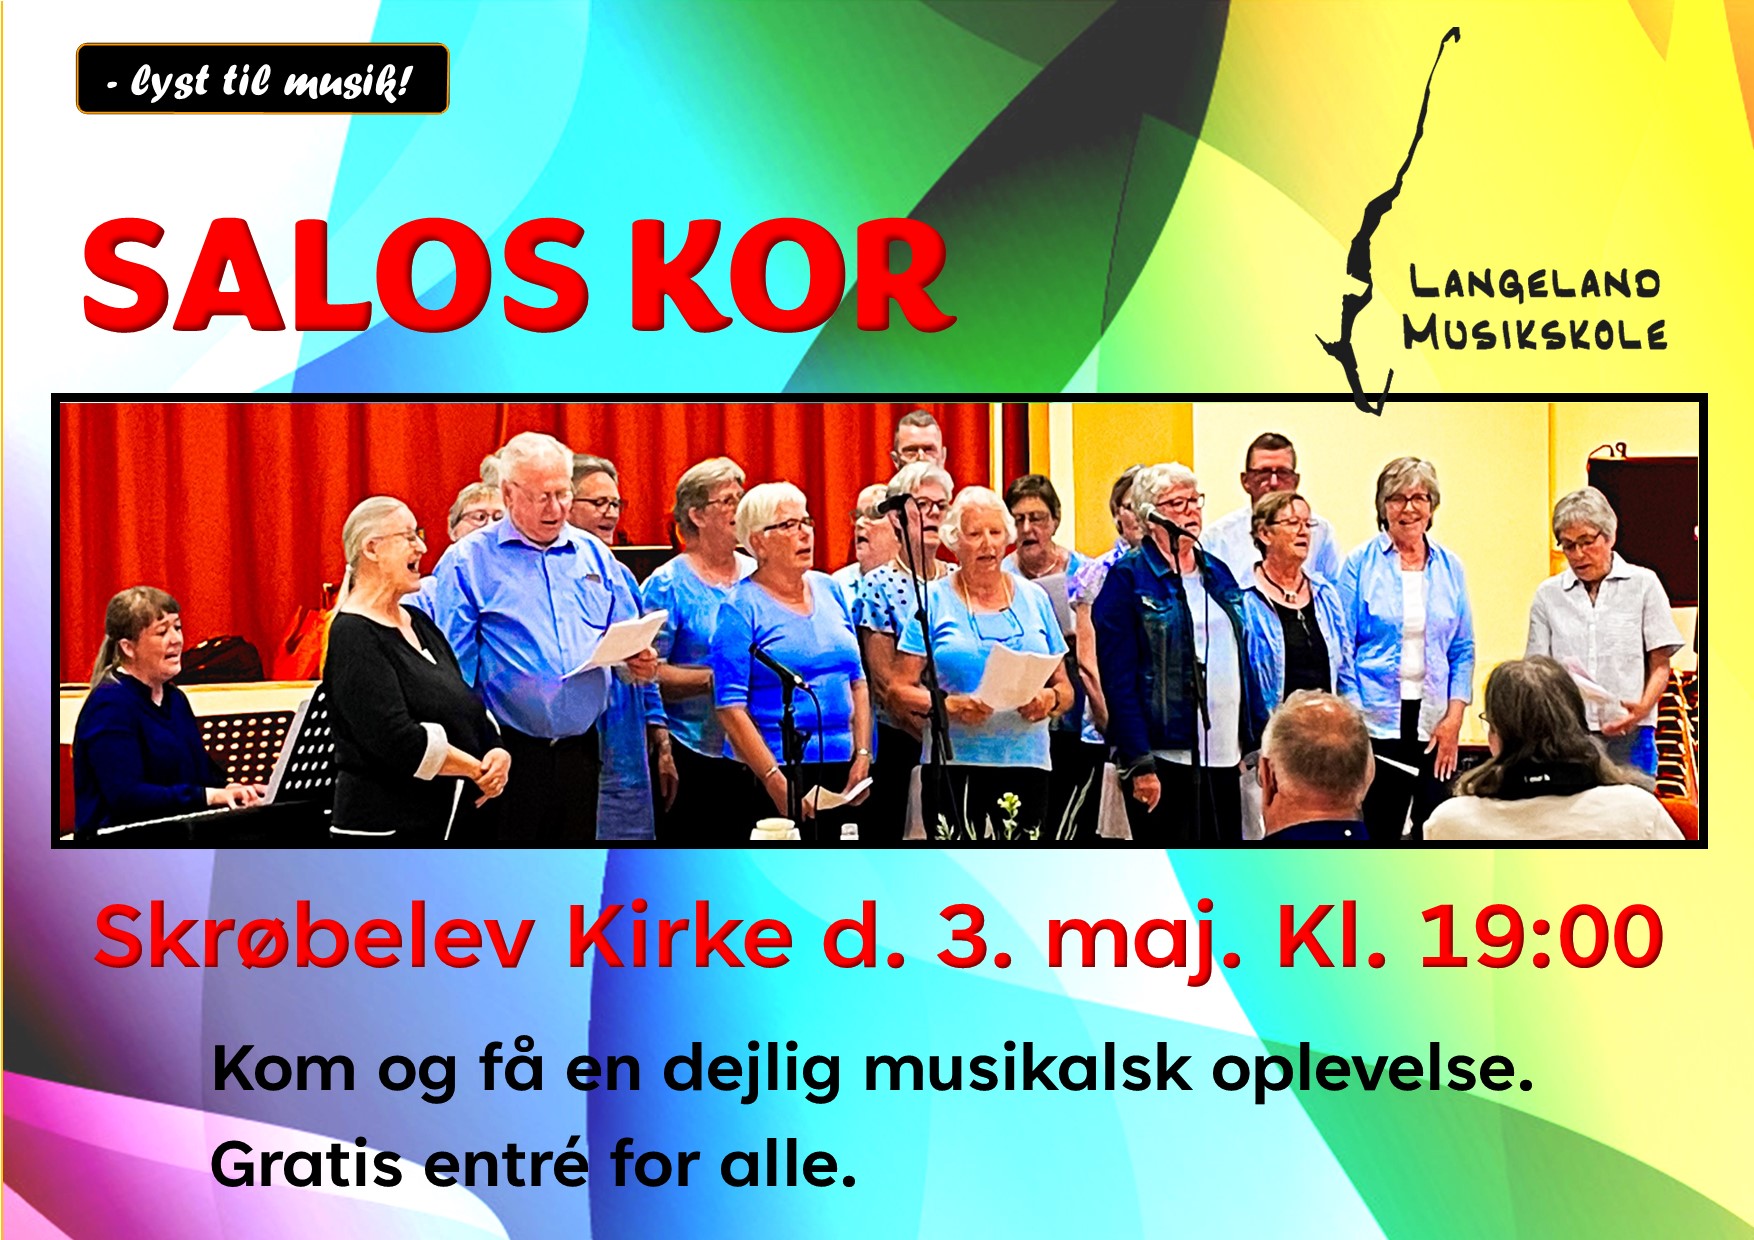 Salos-kor koncert @ Skrøbelev kirke